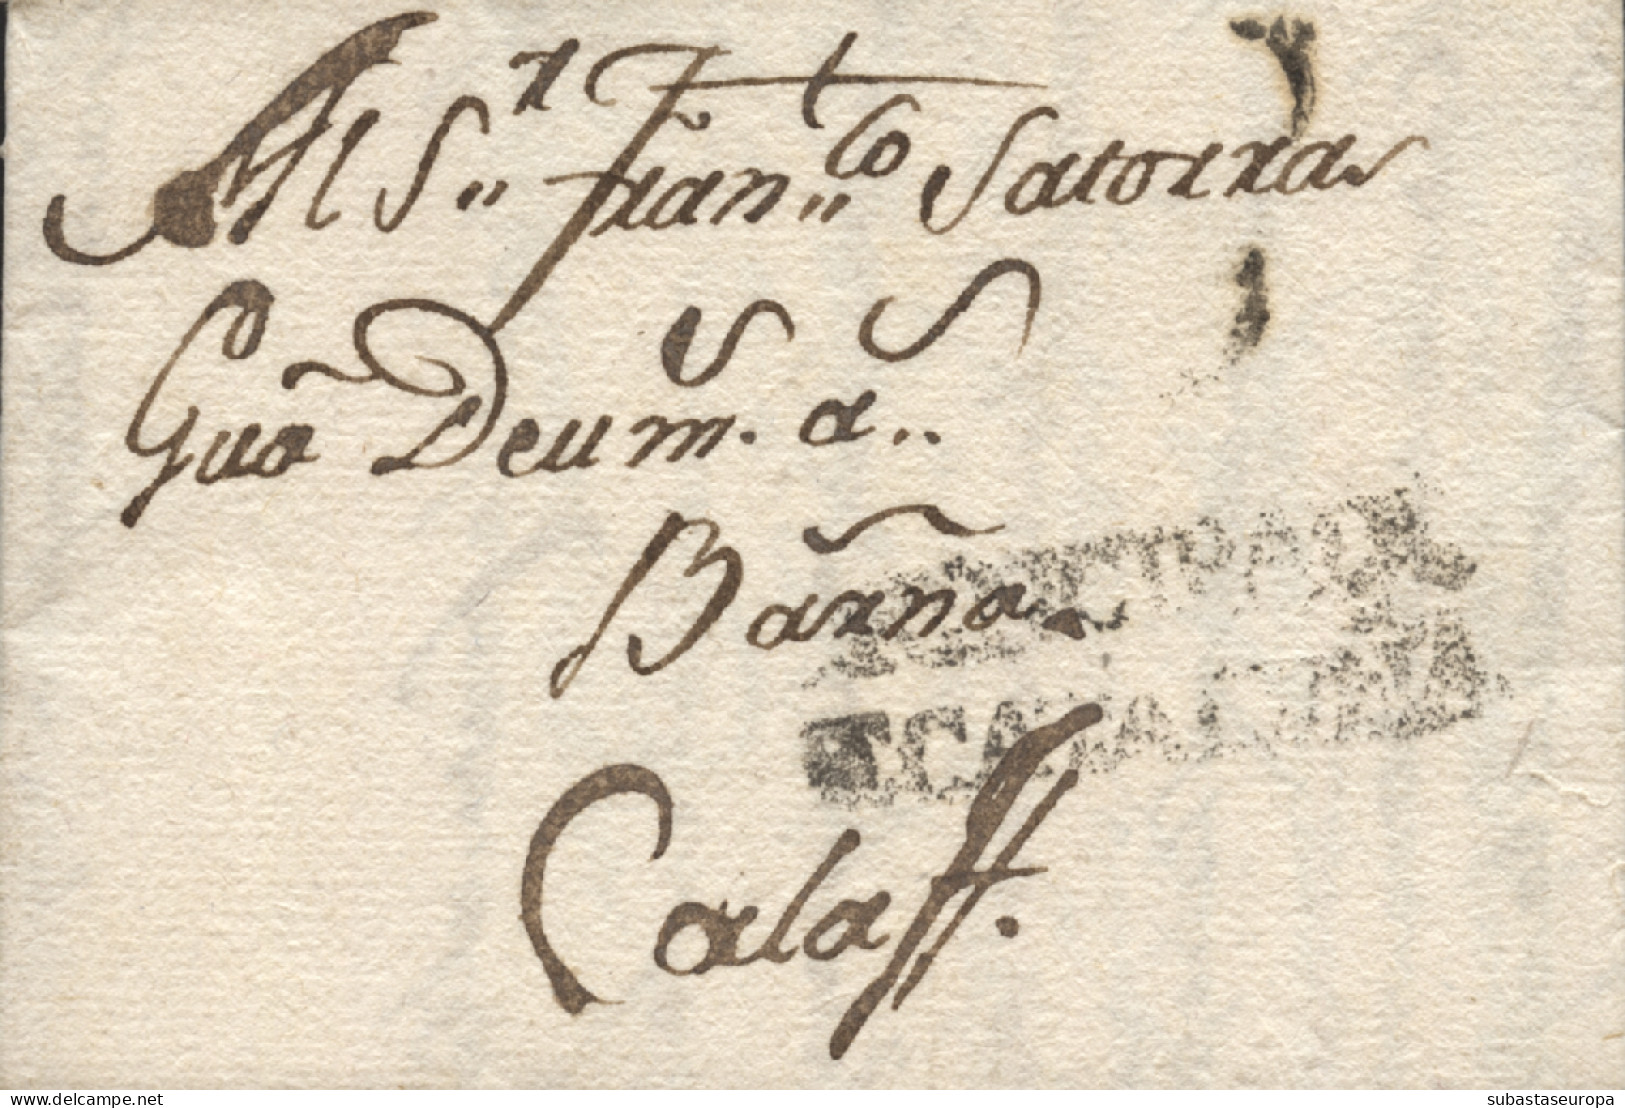 D.P. 5. 1790. Carta De Valls A Calaf. Marca Nº 3N. Preciosa Y Muy Rara. - ...-1850 Prefilatelia